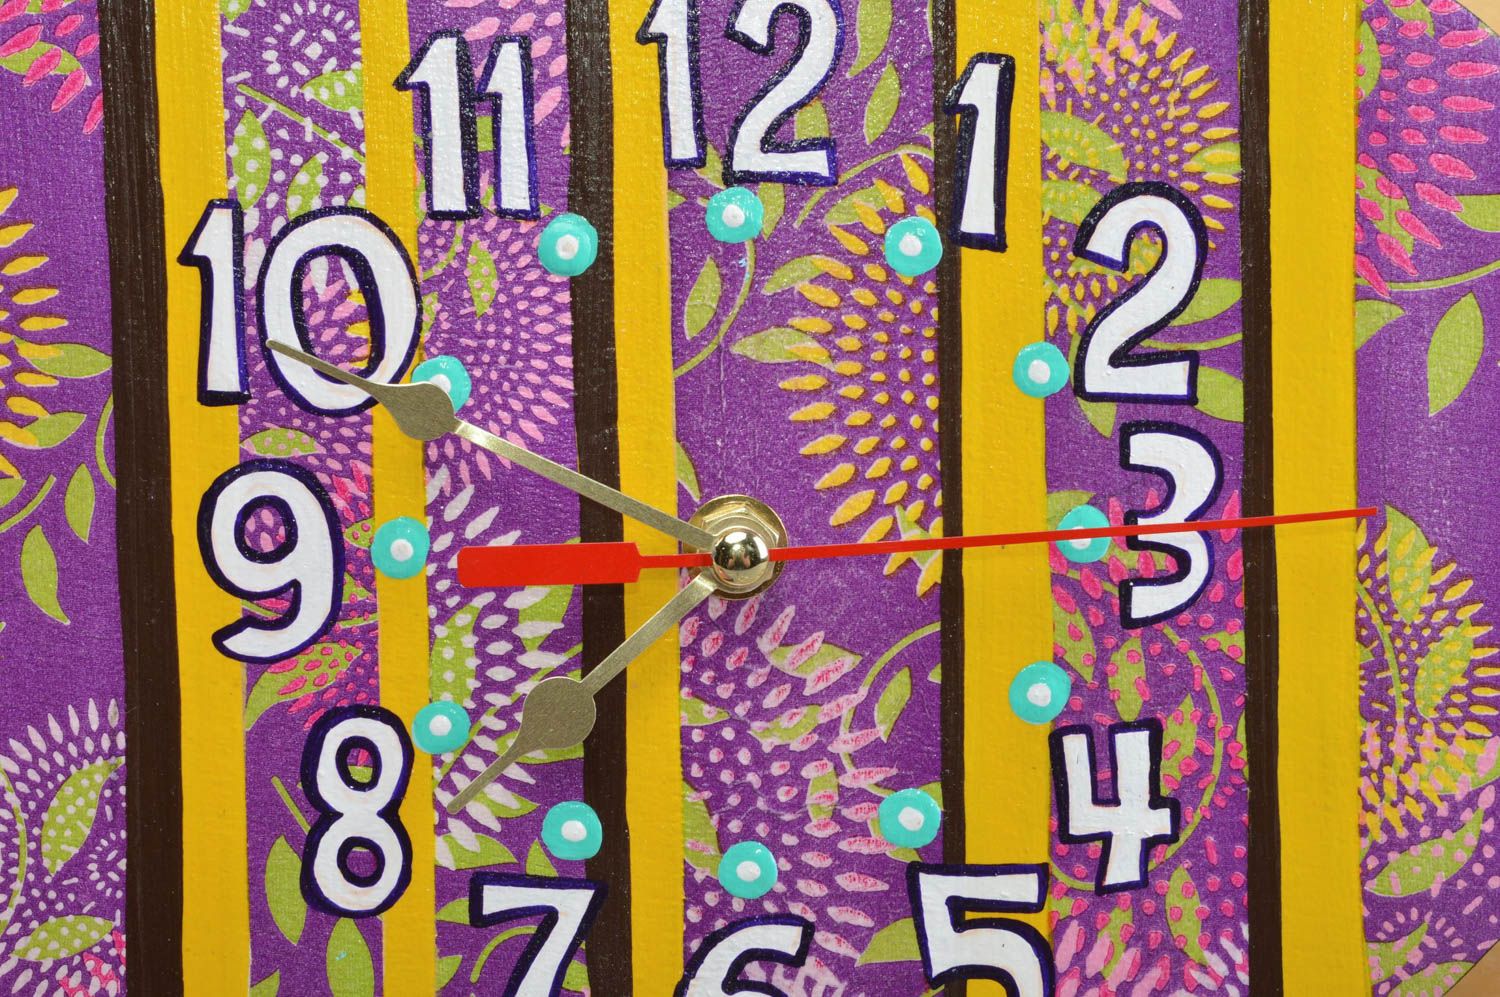 Часы в технике декупаж из фанеры в детскую в виде полосатой пчелки ручной работы фото 2